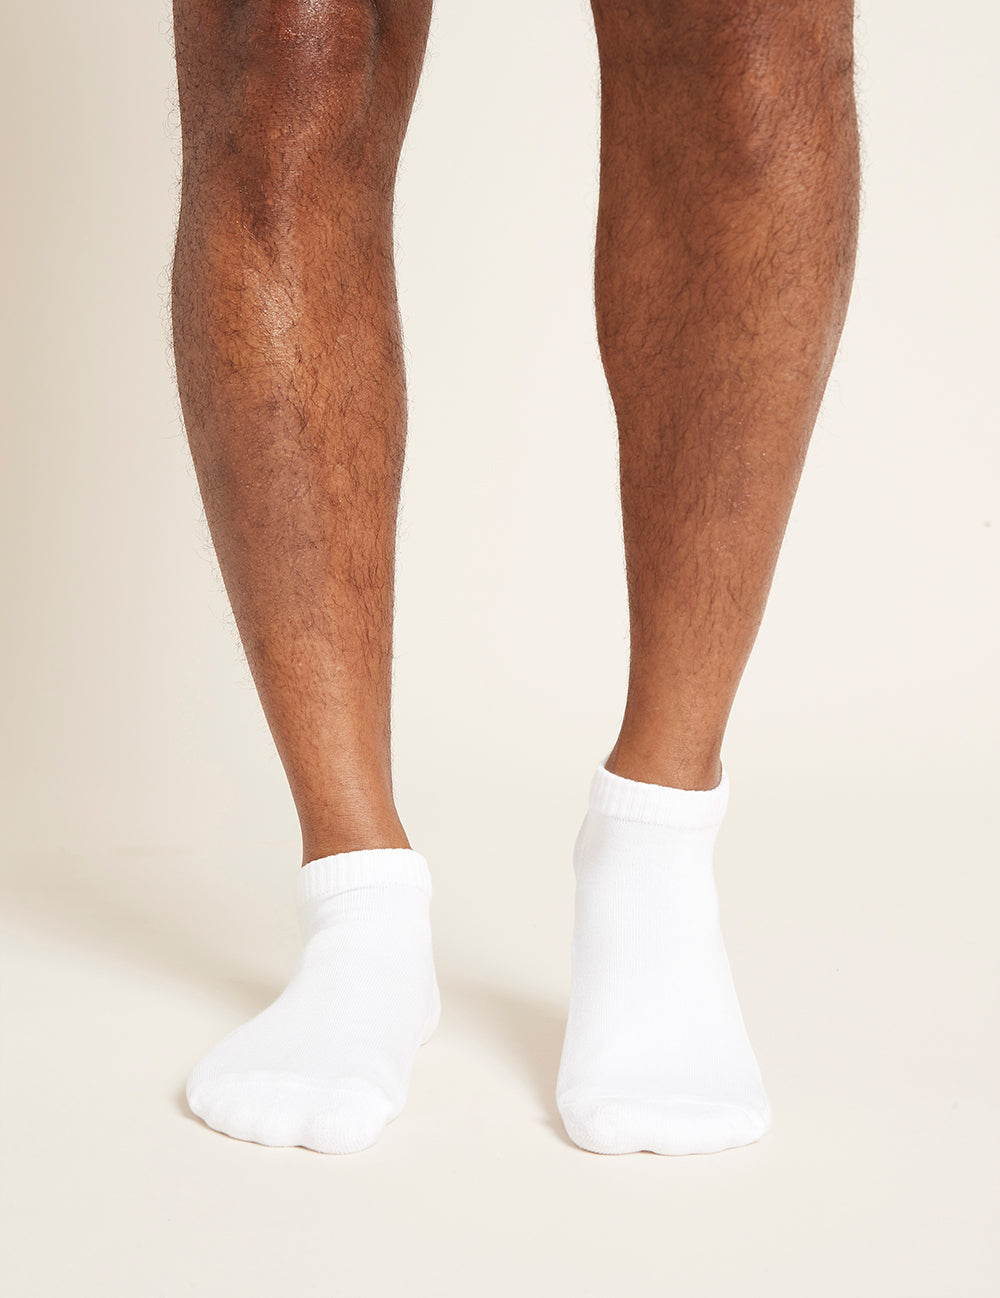 Men's Low Cut Cushioned Sneaker Socks